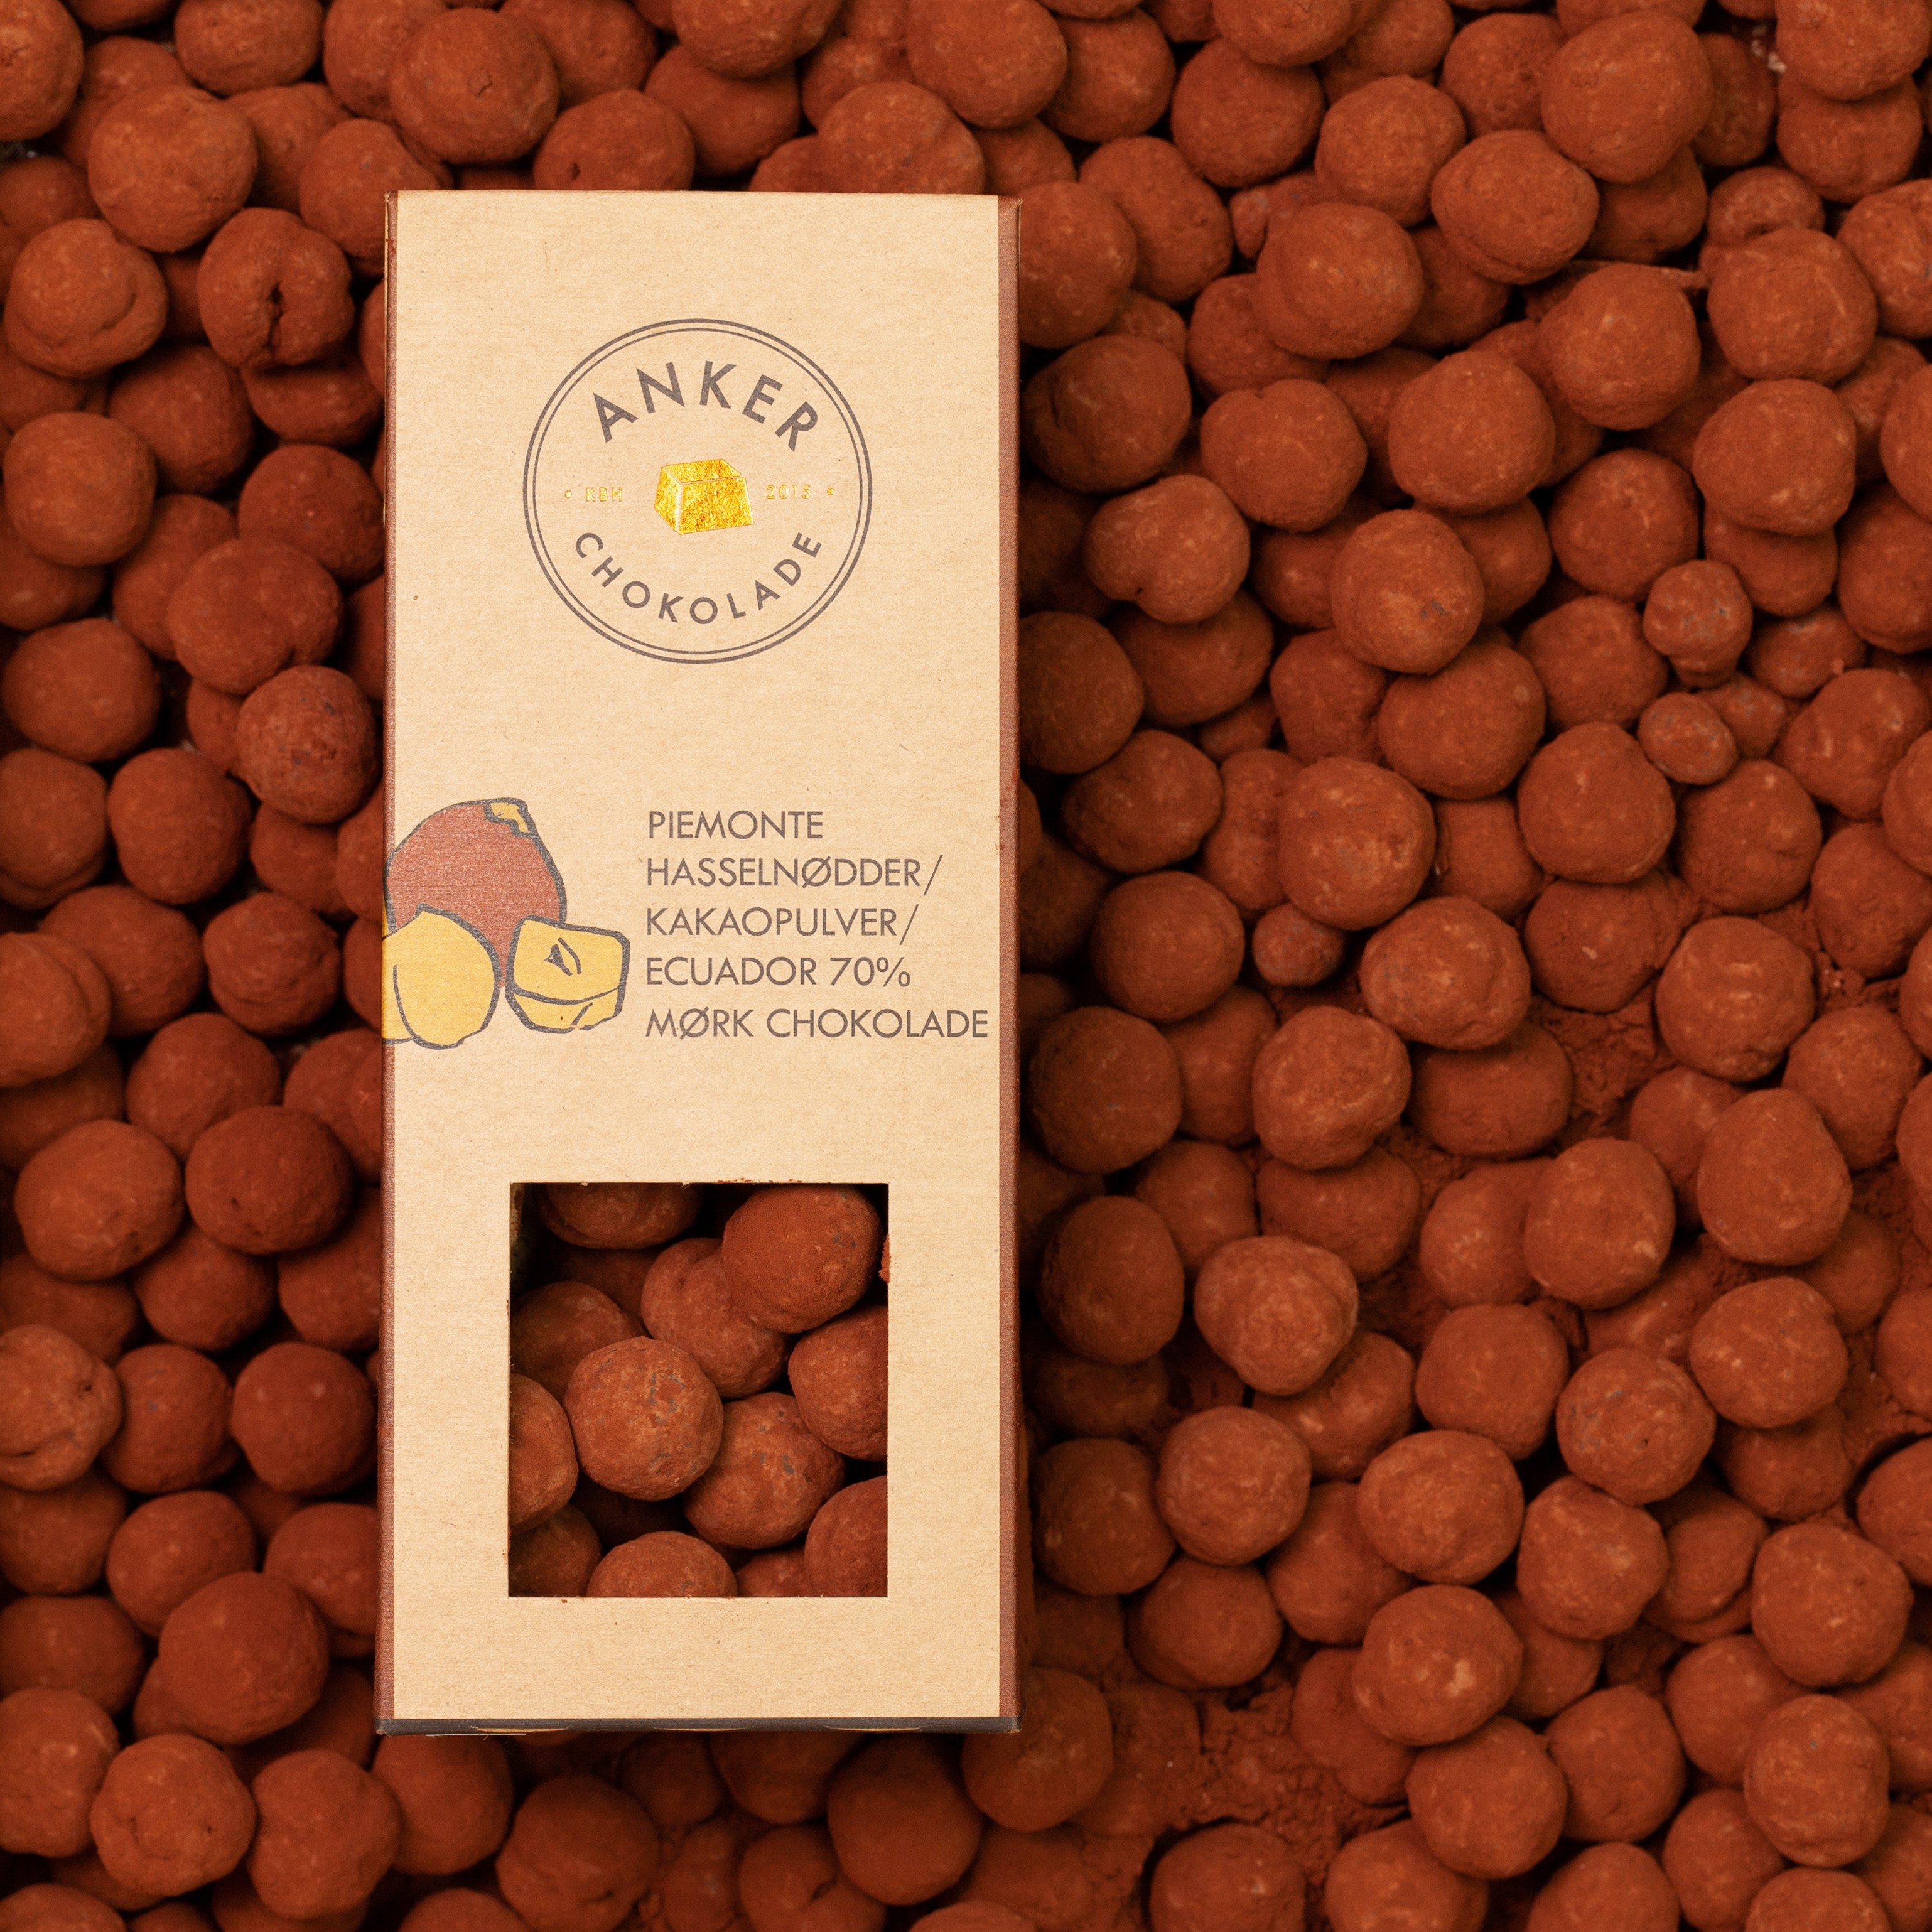 Piemonte hasselnøder / kakaopulver / Ecuador 70% mørk chokolade